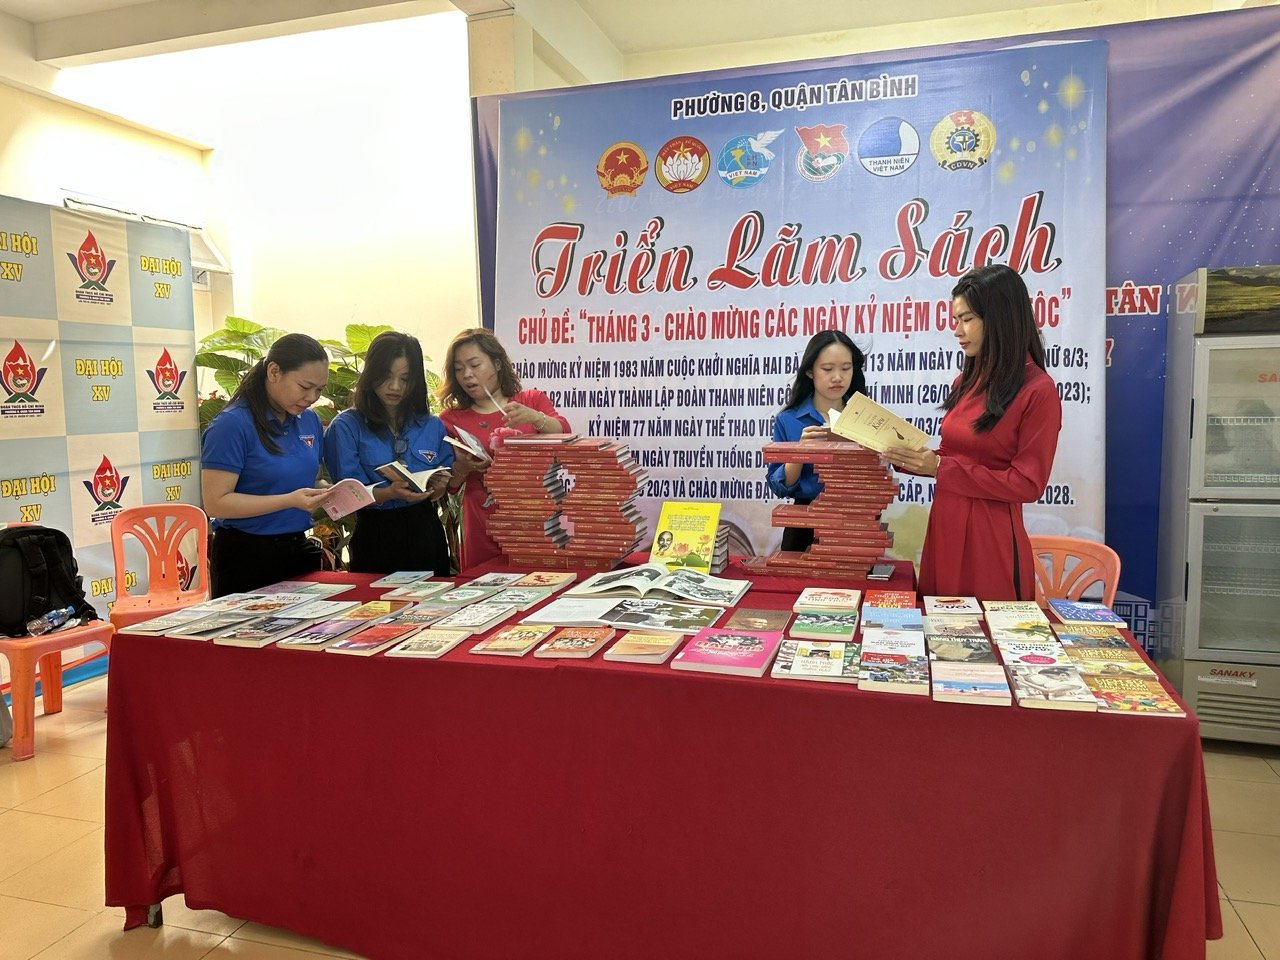 Thư viện quận Tân Bình: Luân chuyển sách phục vụ theo chuyên đề tháng 3 năm 2023